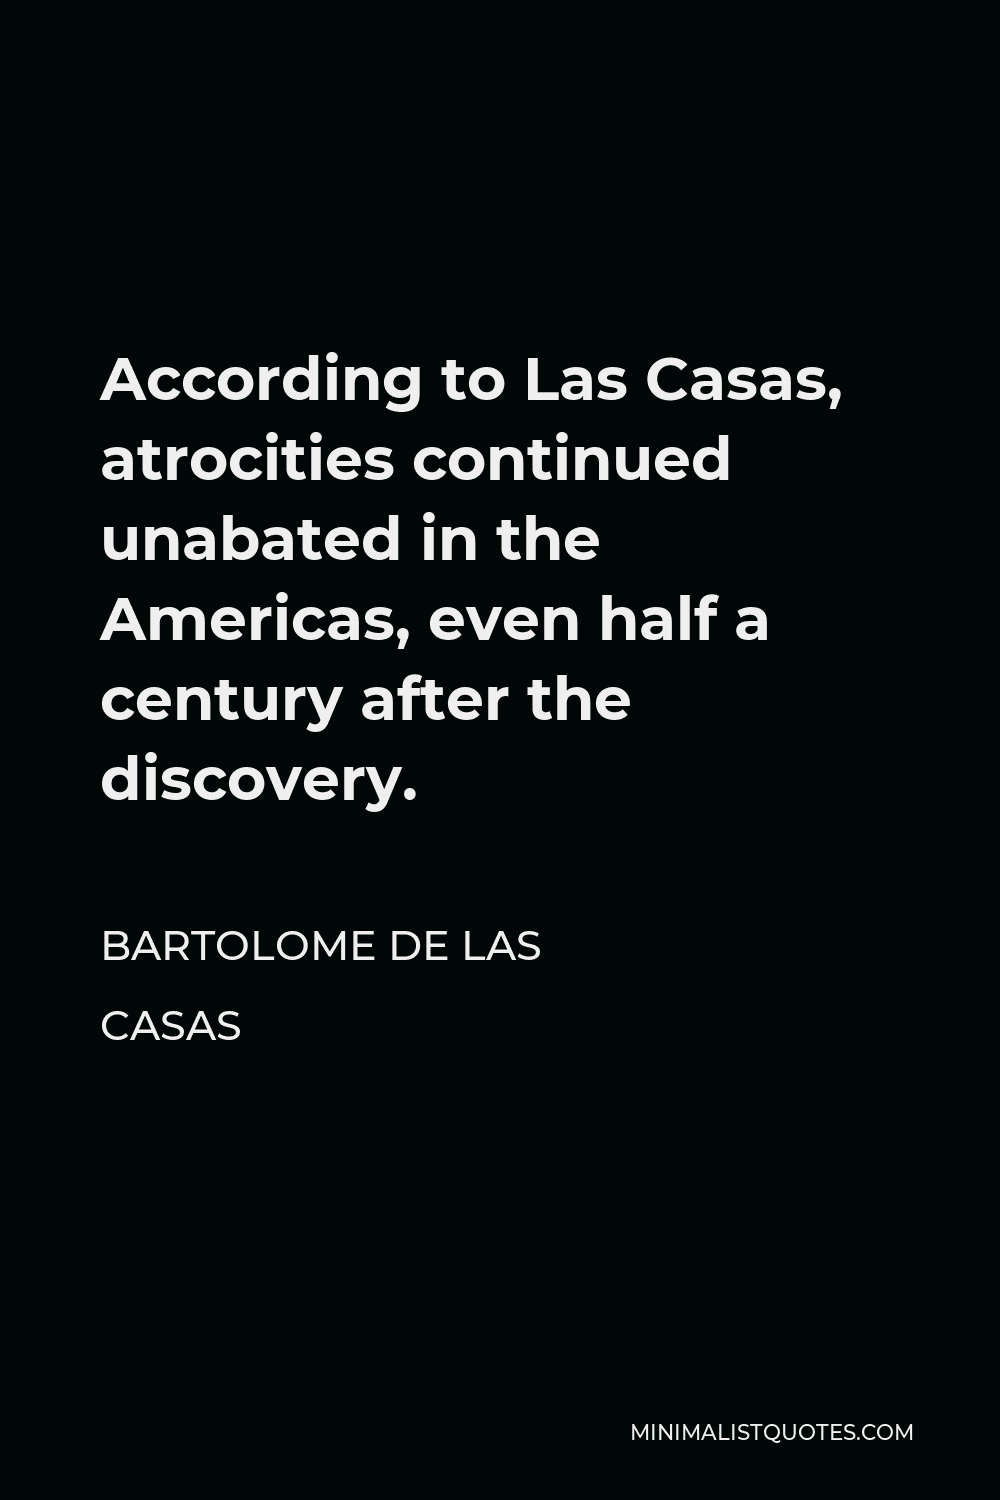 Bartolome de las Casas Quote - According to Las Casas, atrocities continued unabated in the Americas, even half a century after the discovery.